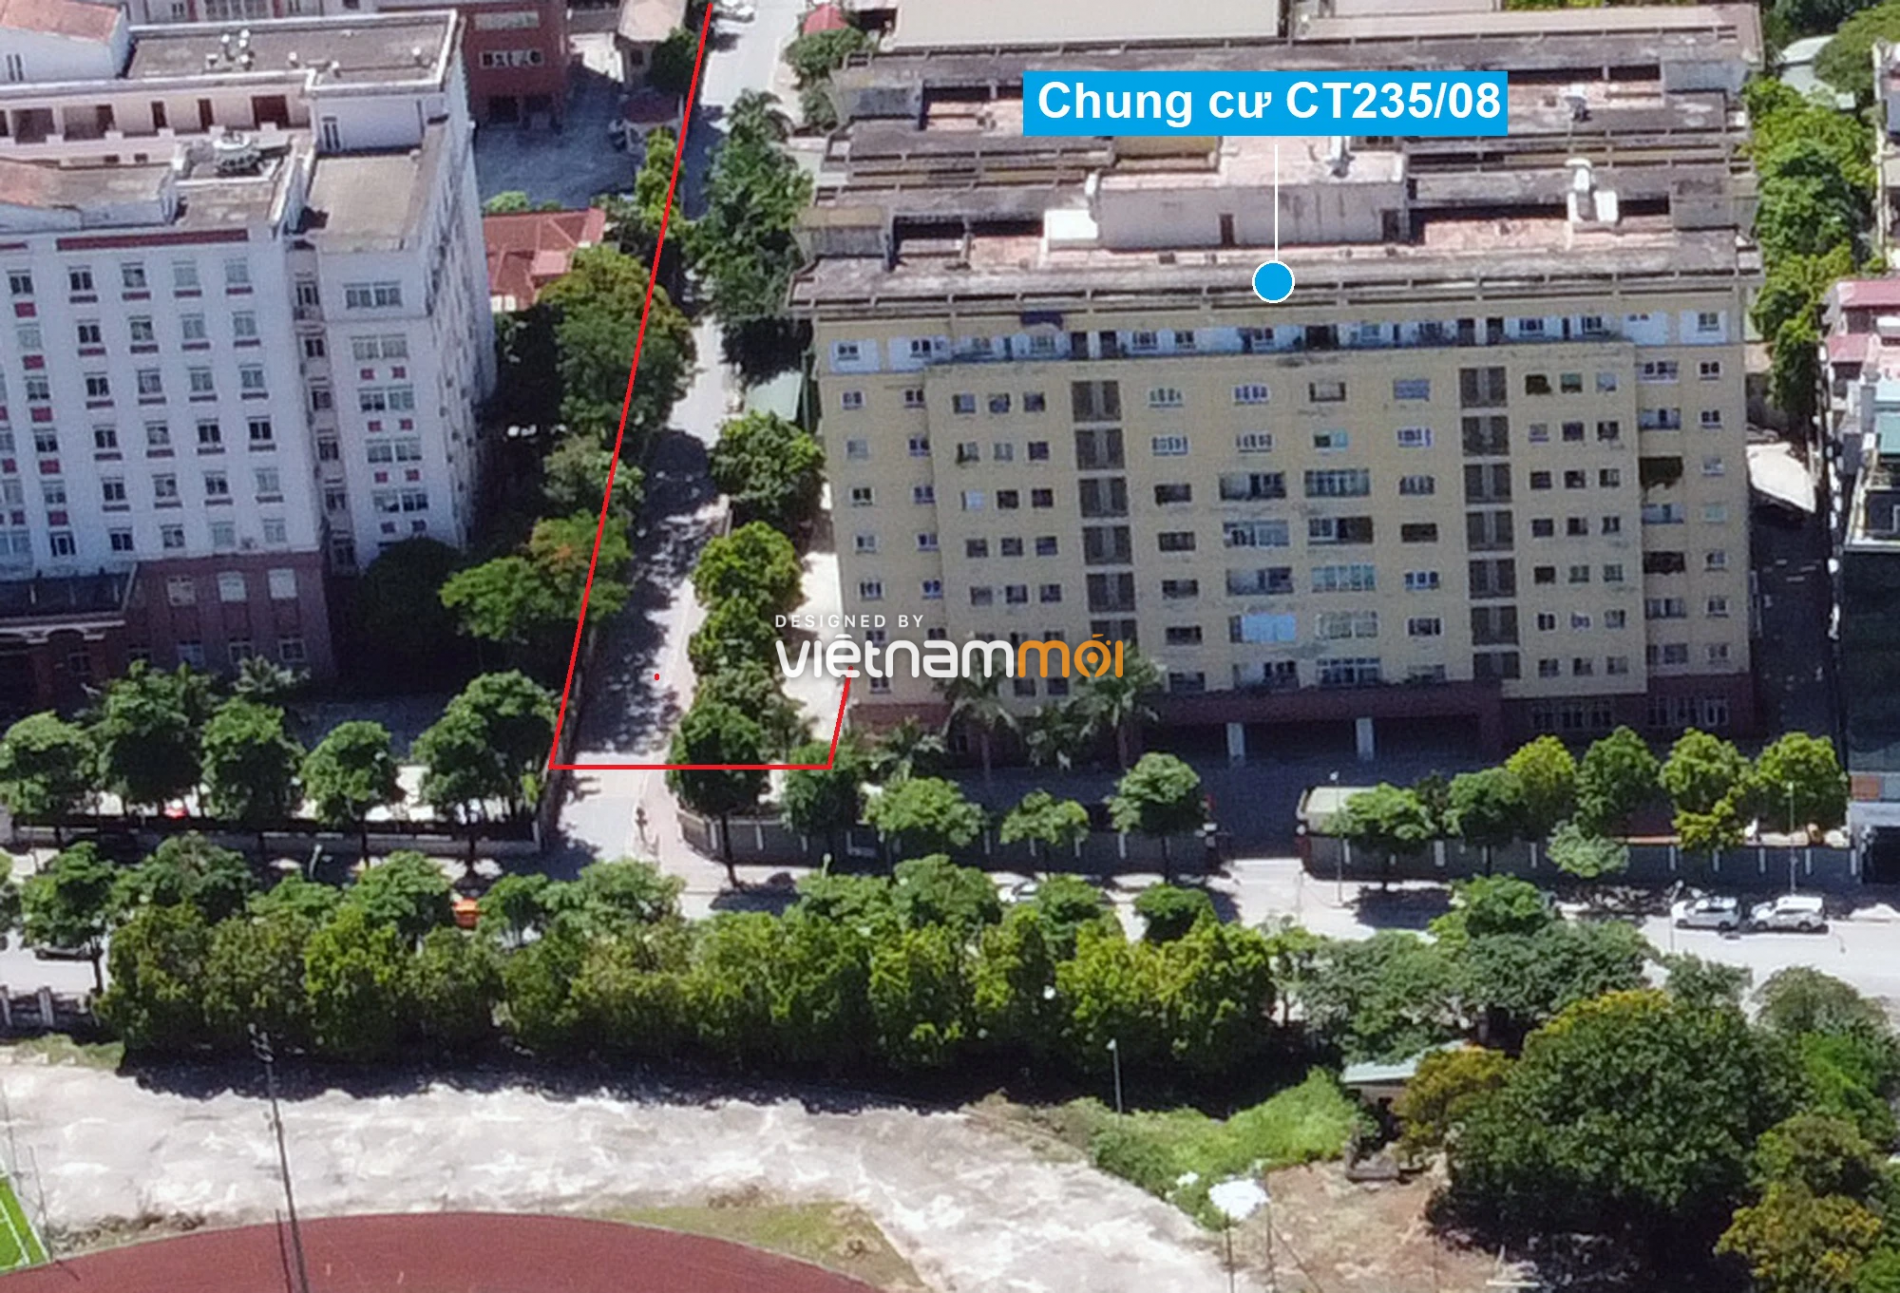 Những khu đất sắp thu hồi để mở đường ở xã Thanh Liệt, Thanh Trì, Hà Nội (phần 3) - Ảnh 15.